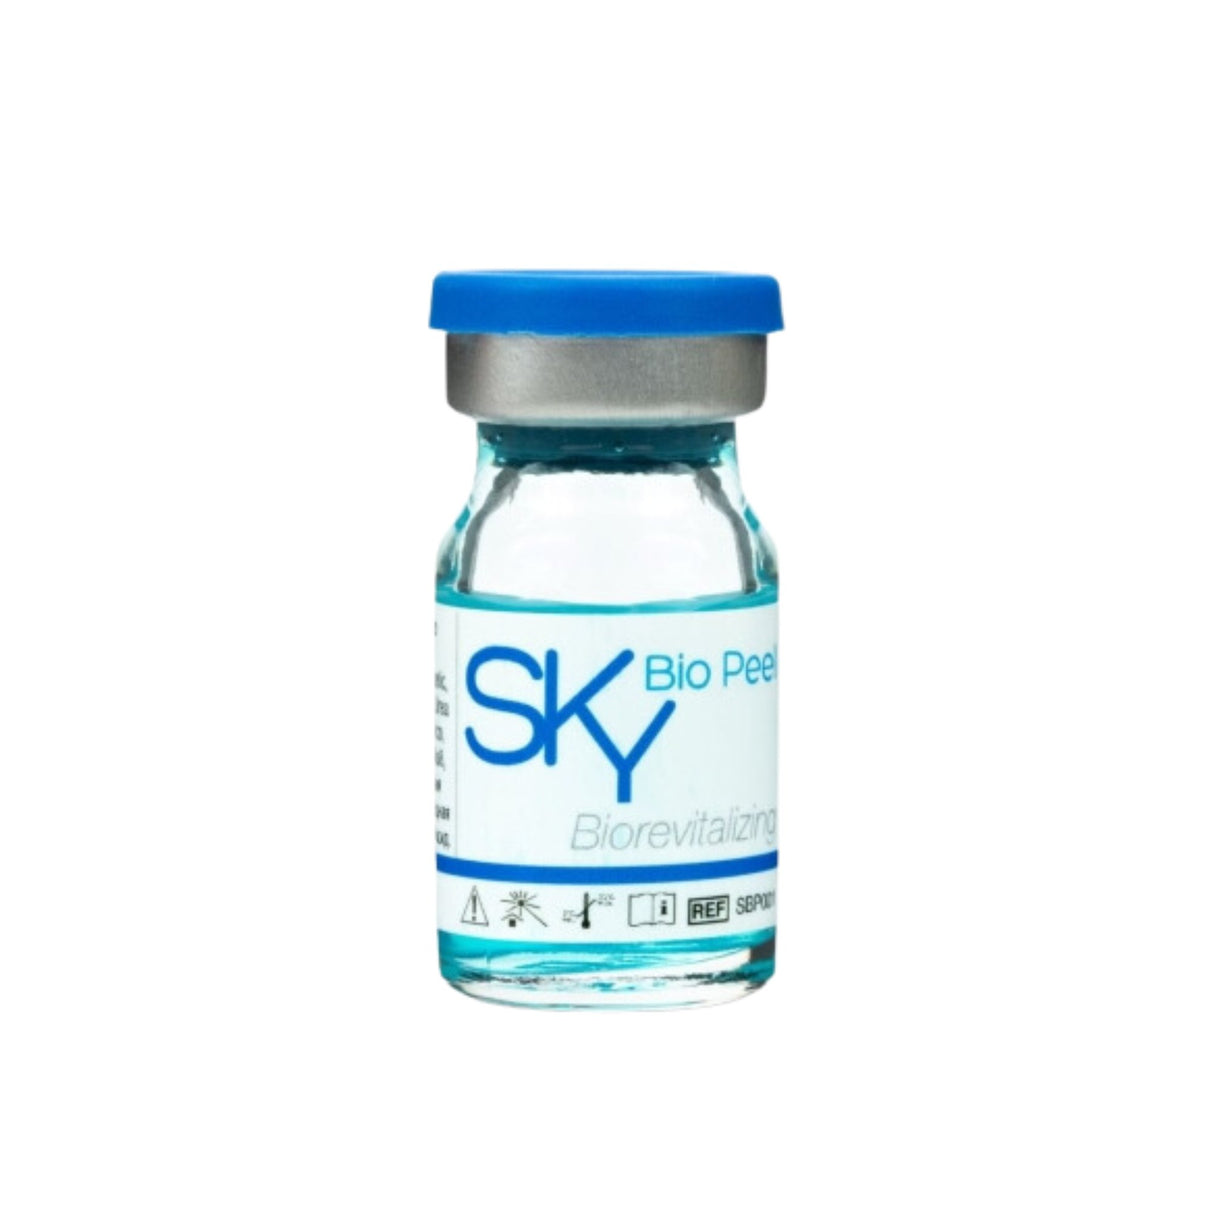 Sky Bio Peel - Filler Lux™ - PEELING - Medixa